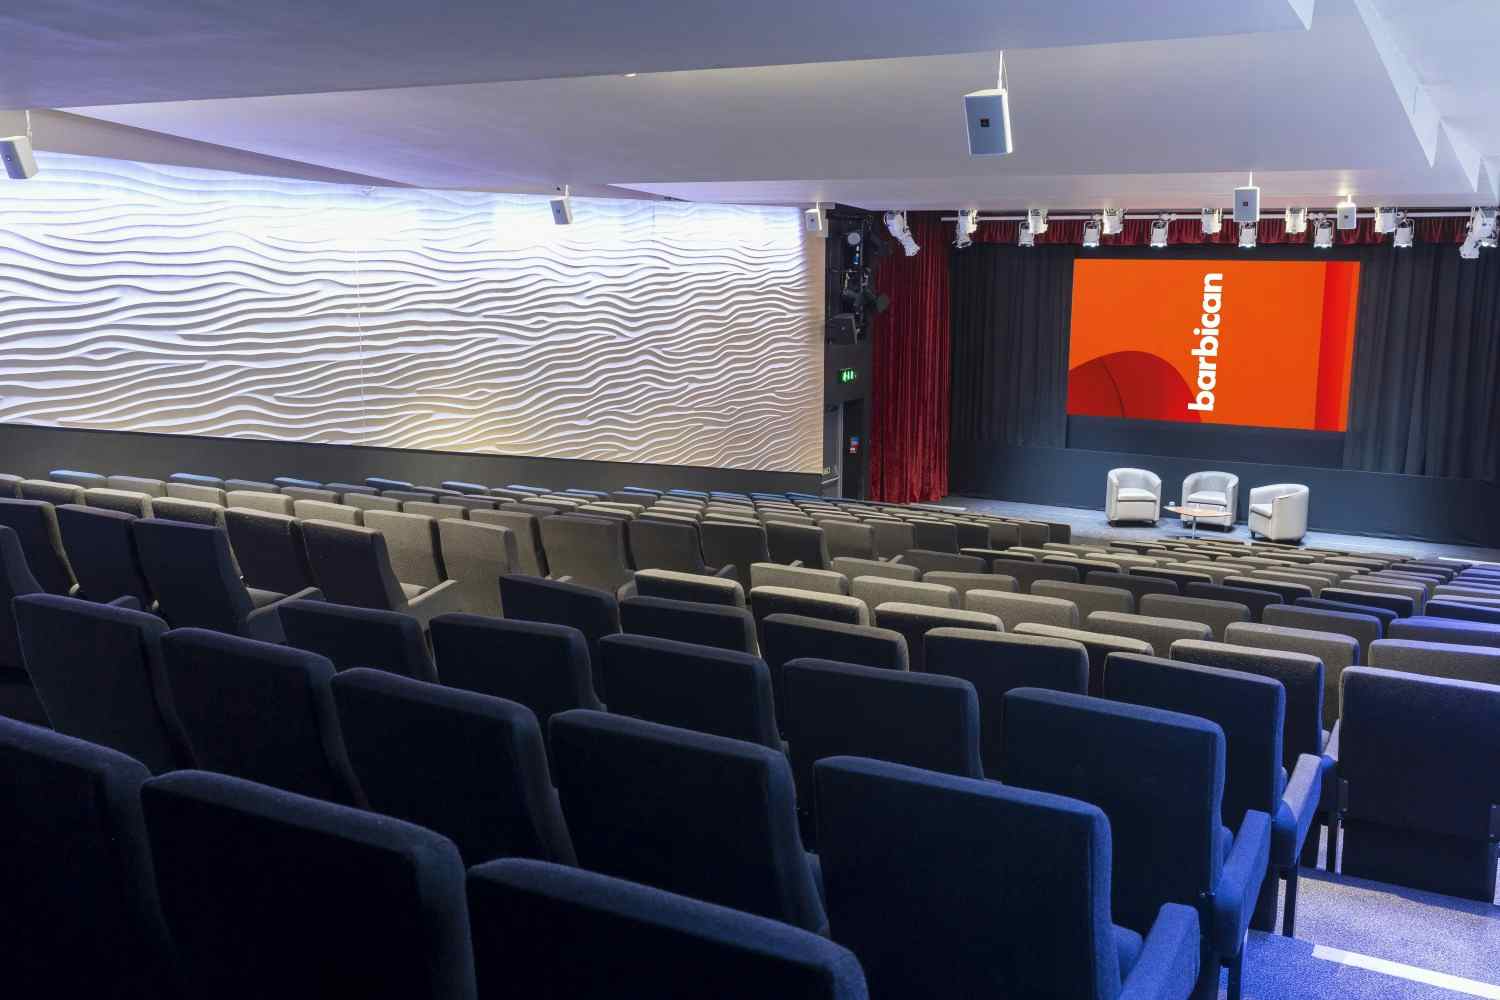 Auditorium 1, Barbican Centre